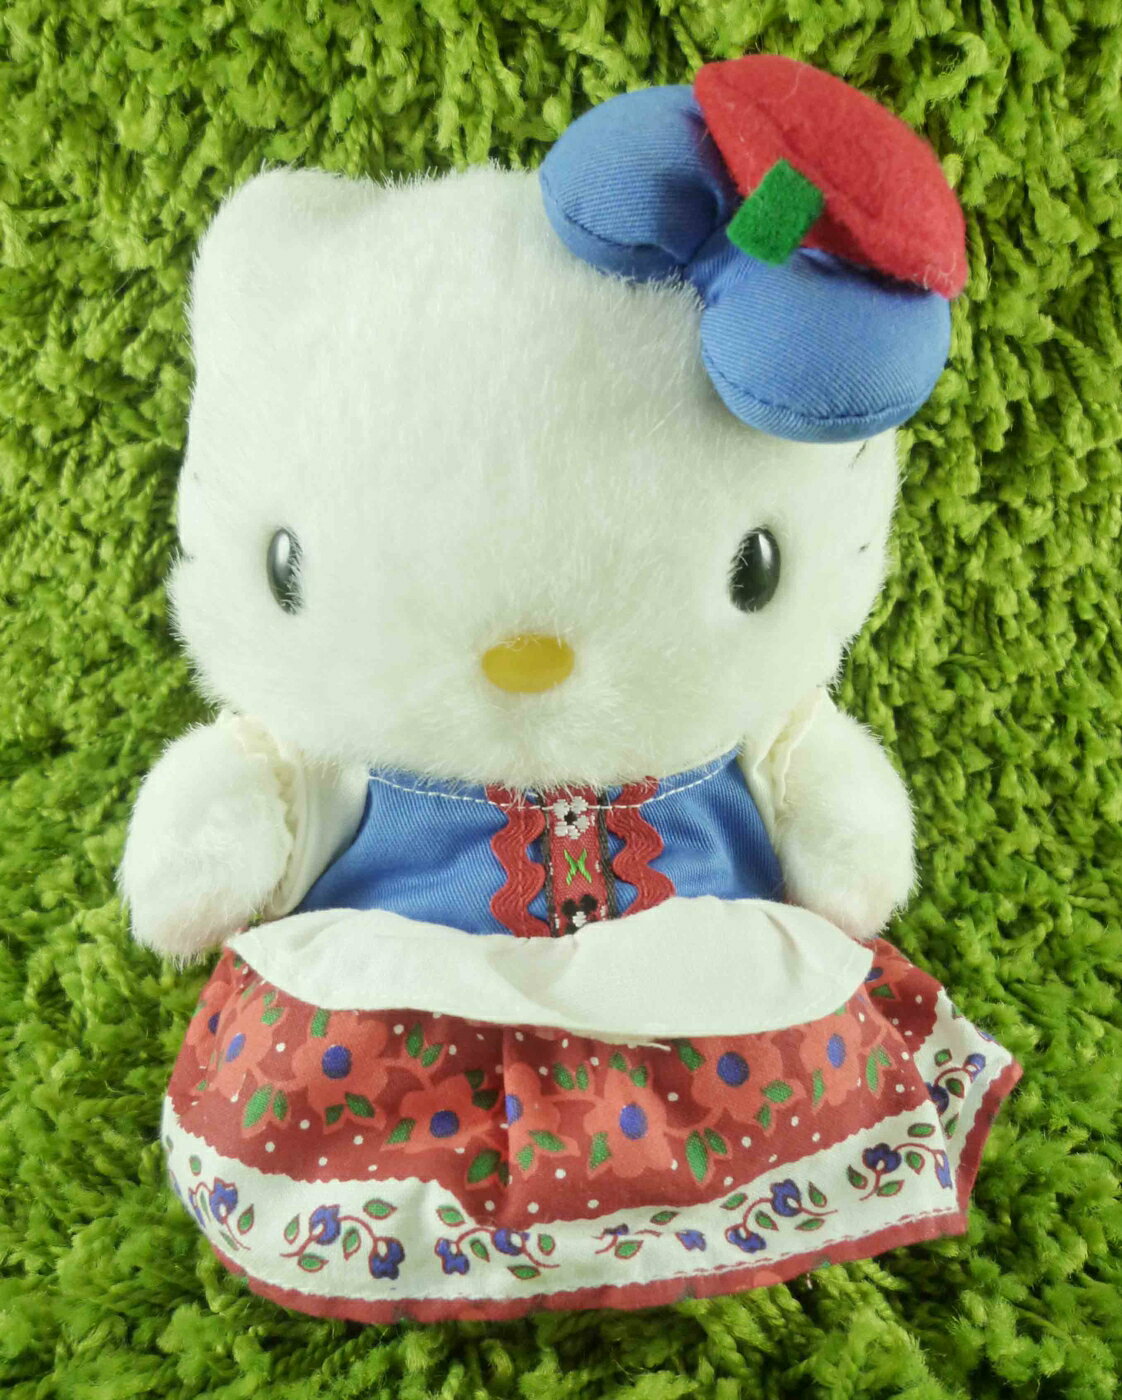 【震撼精品百貨】Hello Kitty 凱蒂貓 KITTY絨毛娃娃-荷蘭服飾-紅色 震撼日式精品百貨